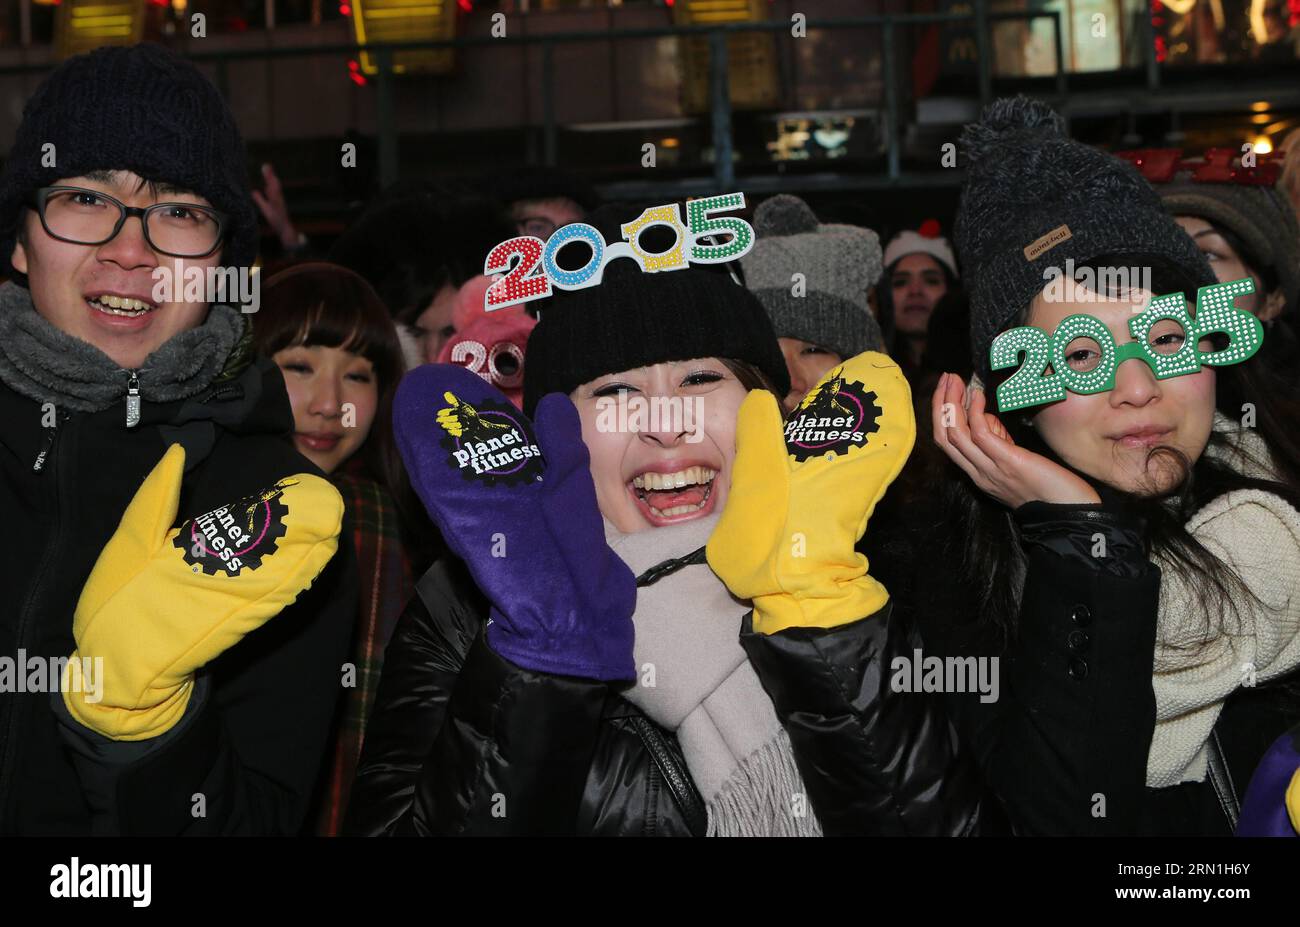 La gente partecipa alla celebrazione di Capodanno a Times Square a New York, negli Stati Uniti, il 31 dicembre 2014. Times Square è stata al centro dell'attenzione mondiale per il Capodanno per più di 100 anni. La prima celebrazione dell'abbassamento della palla è avvenuta nel 1907, e questa tradizione è ora un simbolo universale di accoglienza del nuovo anno. ) (Lyi) CAPODANNO USA-NEW YORK-QinxLang PUBLICATIONxNOTxINxCHN celebrità partecipano alla celebrazione di Capodanno A Times Square a New York gli Stati Uniti SU DEC 31 2014 Times Square è stato il centro dell'attenzione mondiale SU Capodanno Foto Stock